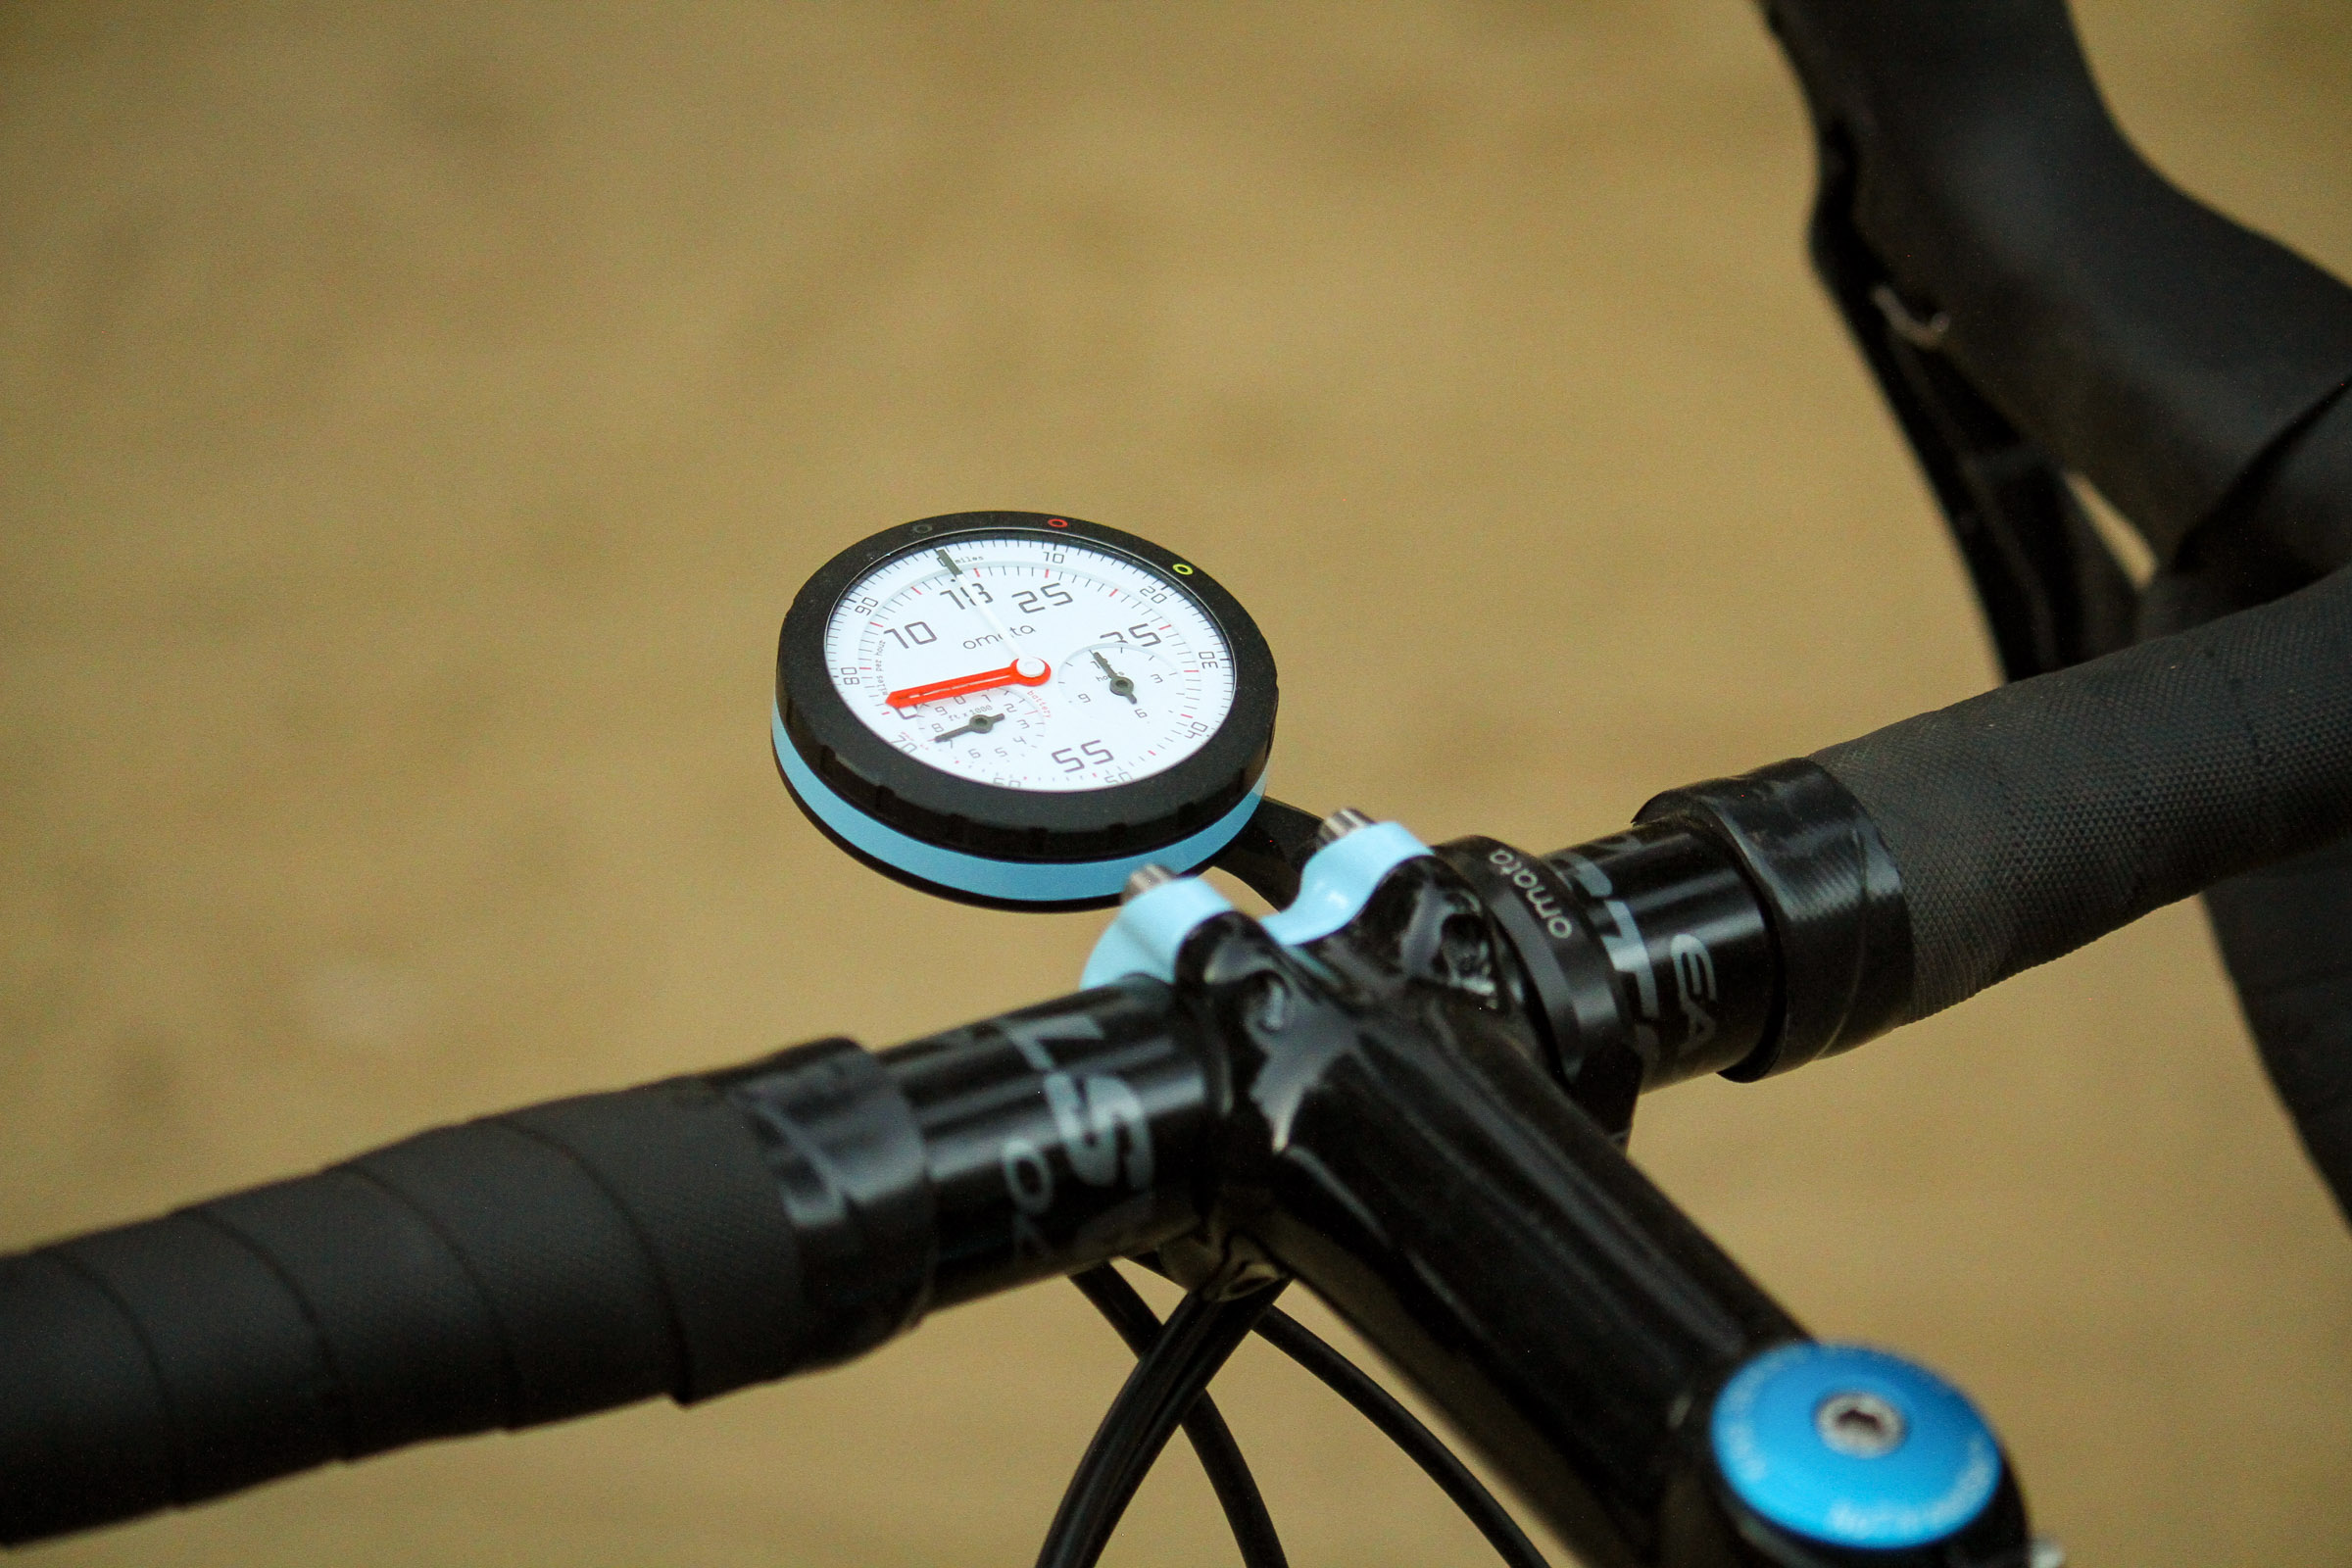 road bike speedometer